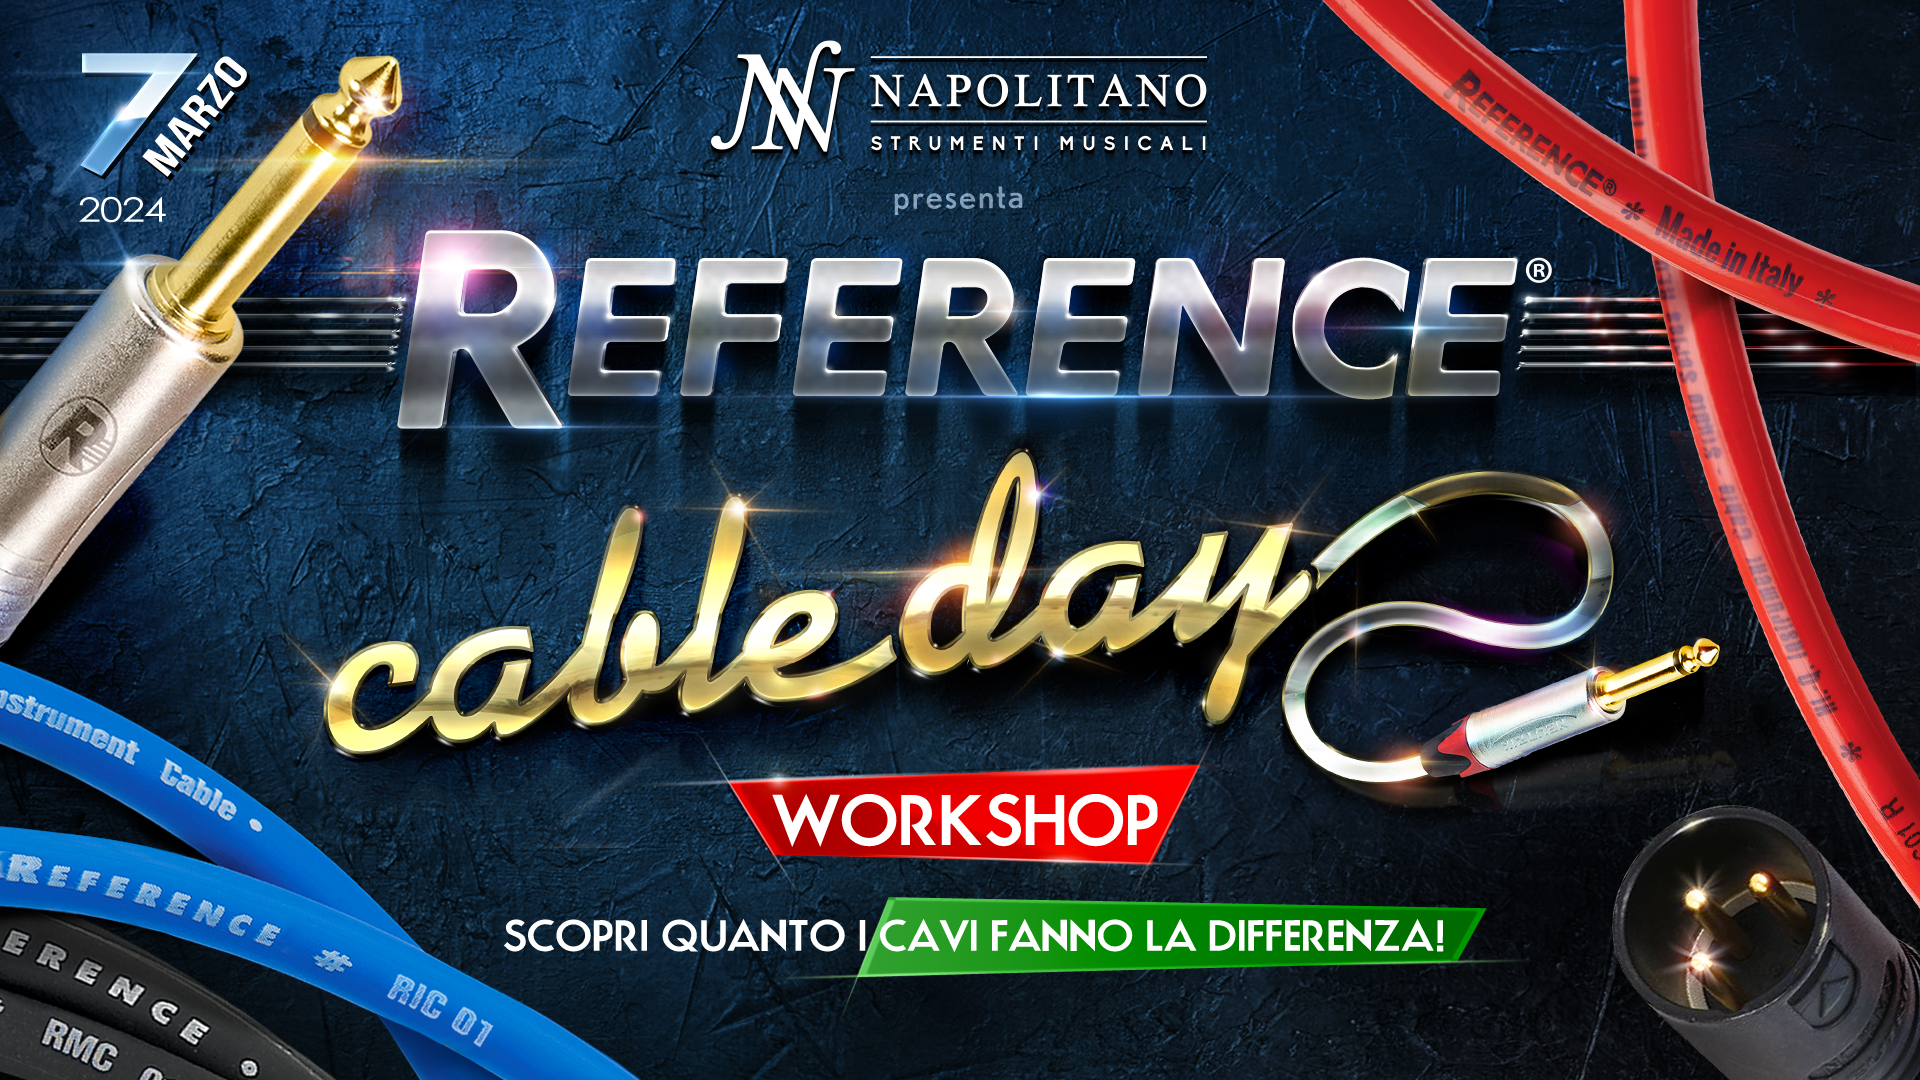 Reference® CABLE DAY @ Napolitano Strumenti Musicali